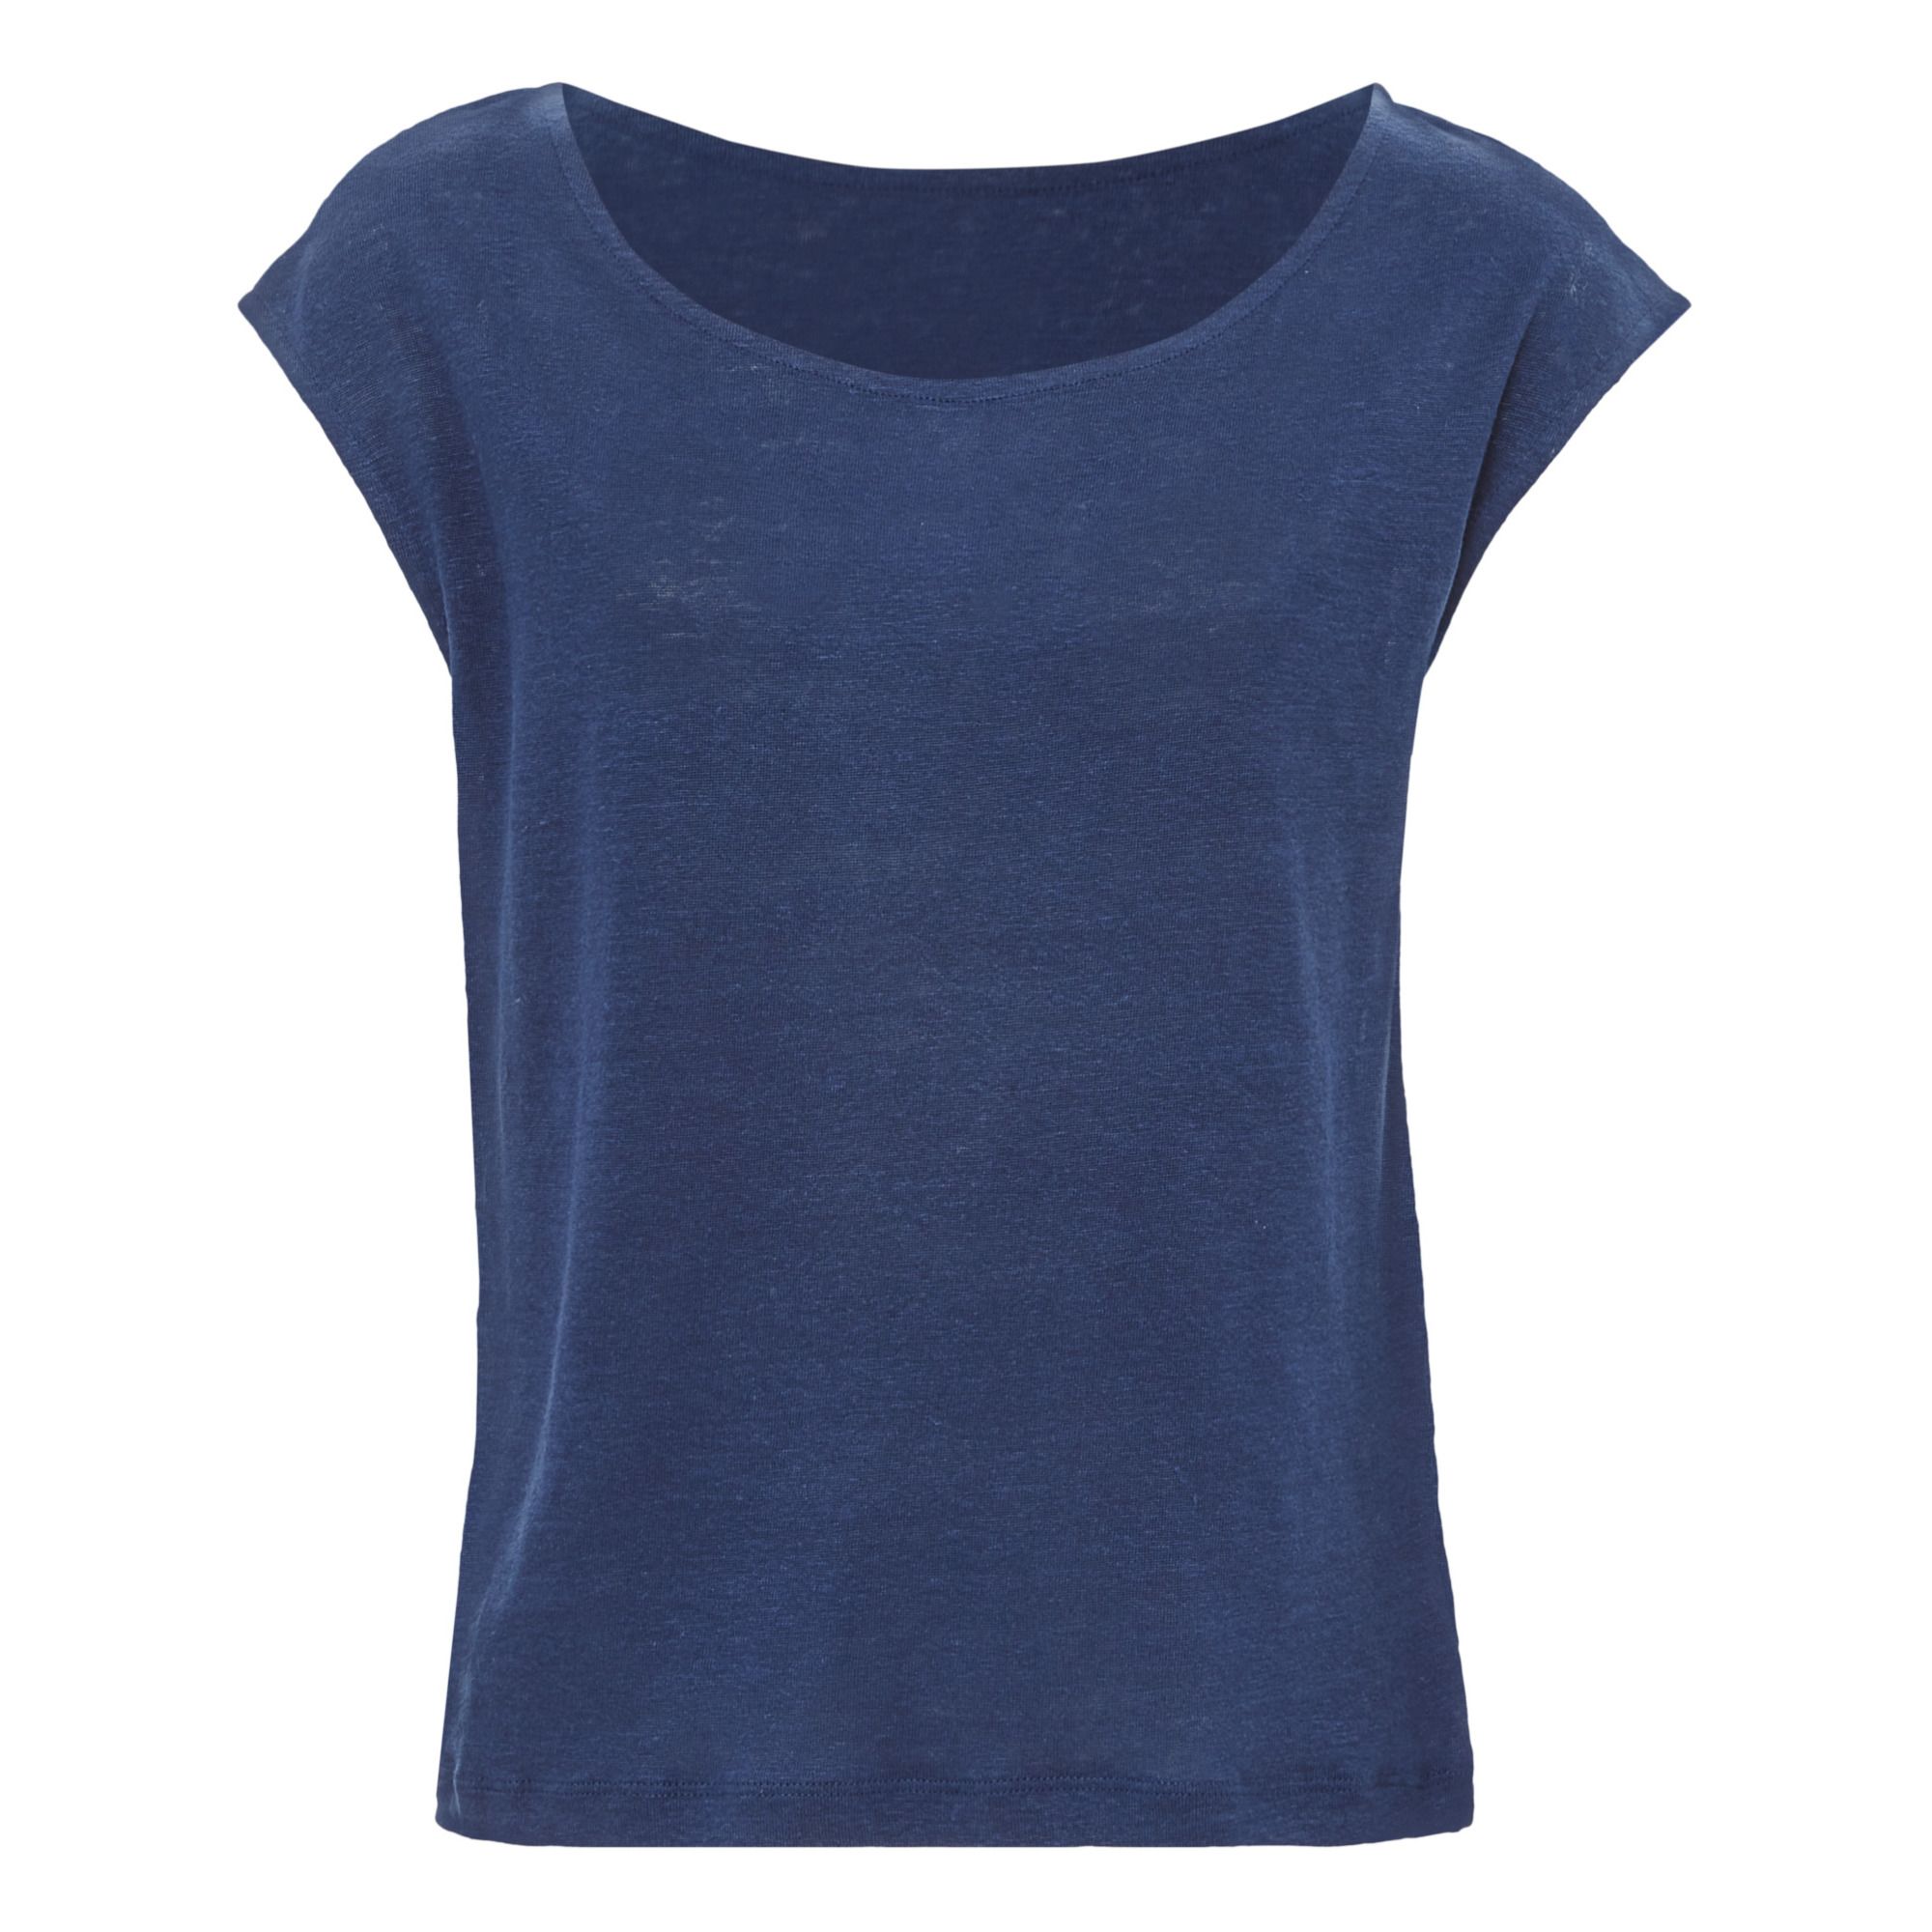 PETIT BATEAU Girl's Navy T-Shirt 71580 Sz 3 NEW $21 